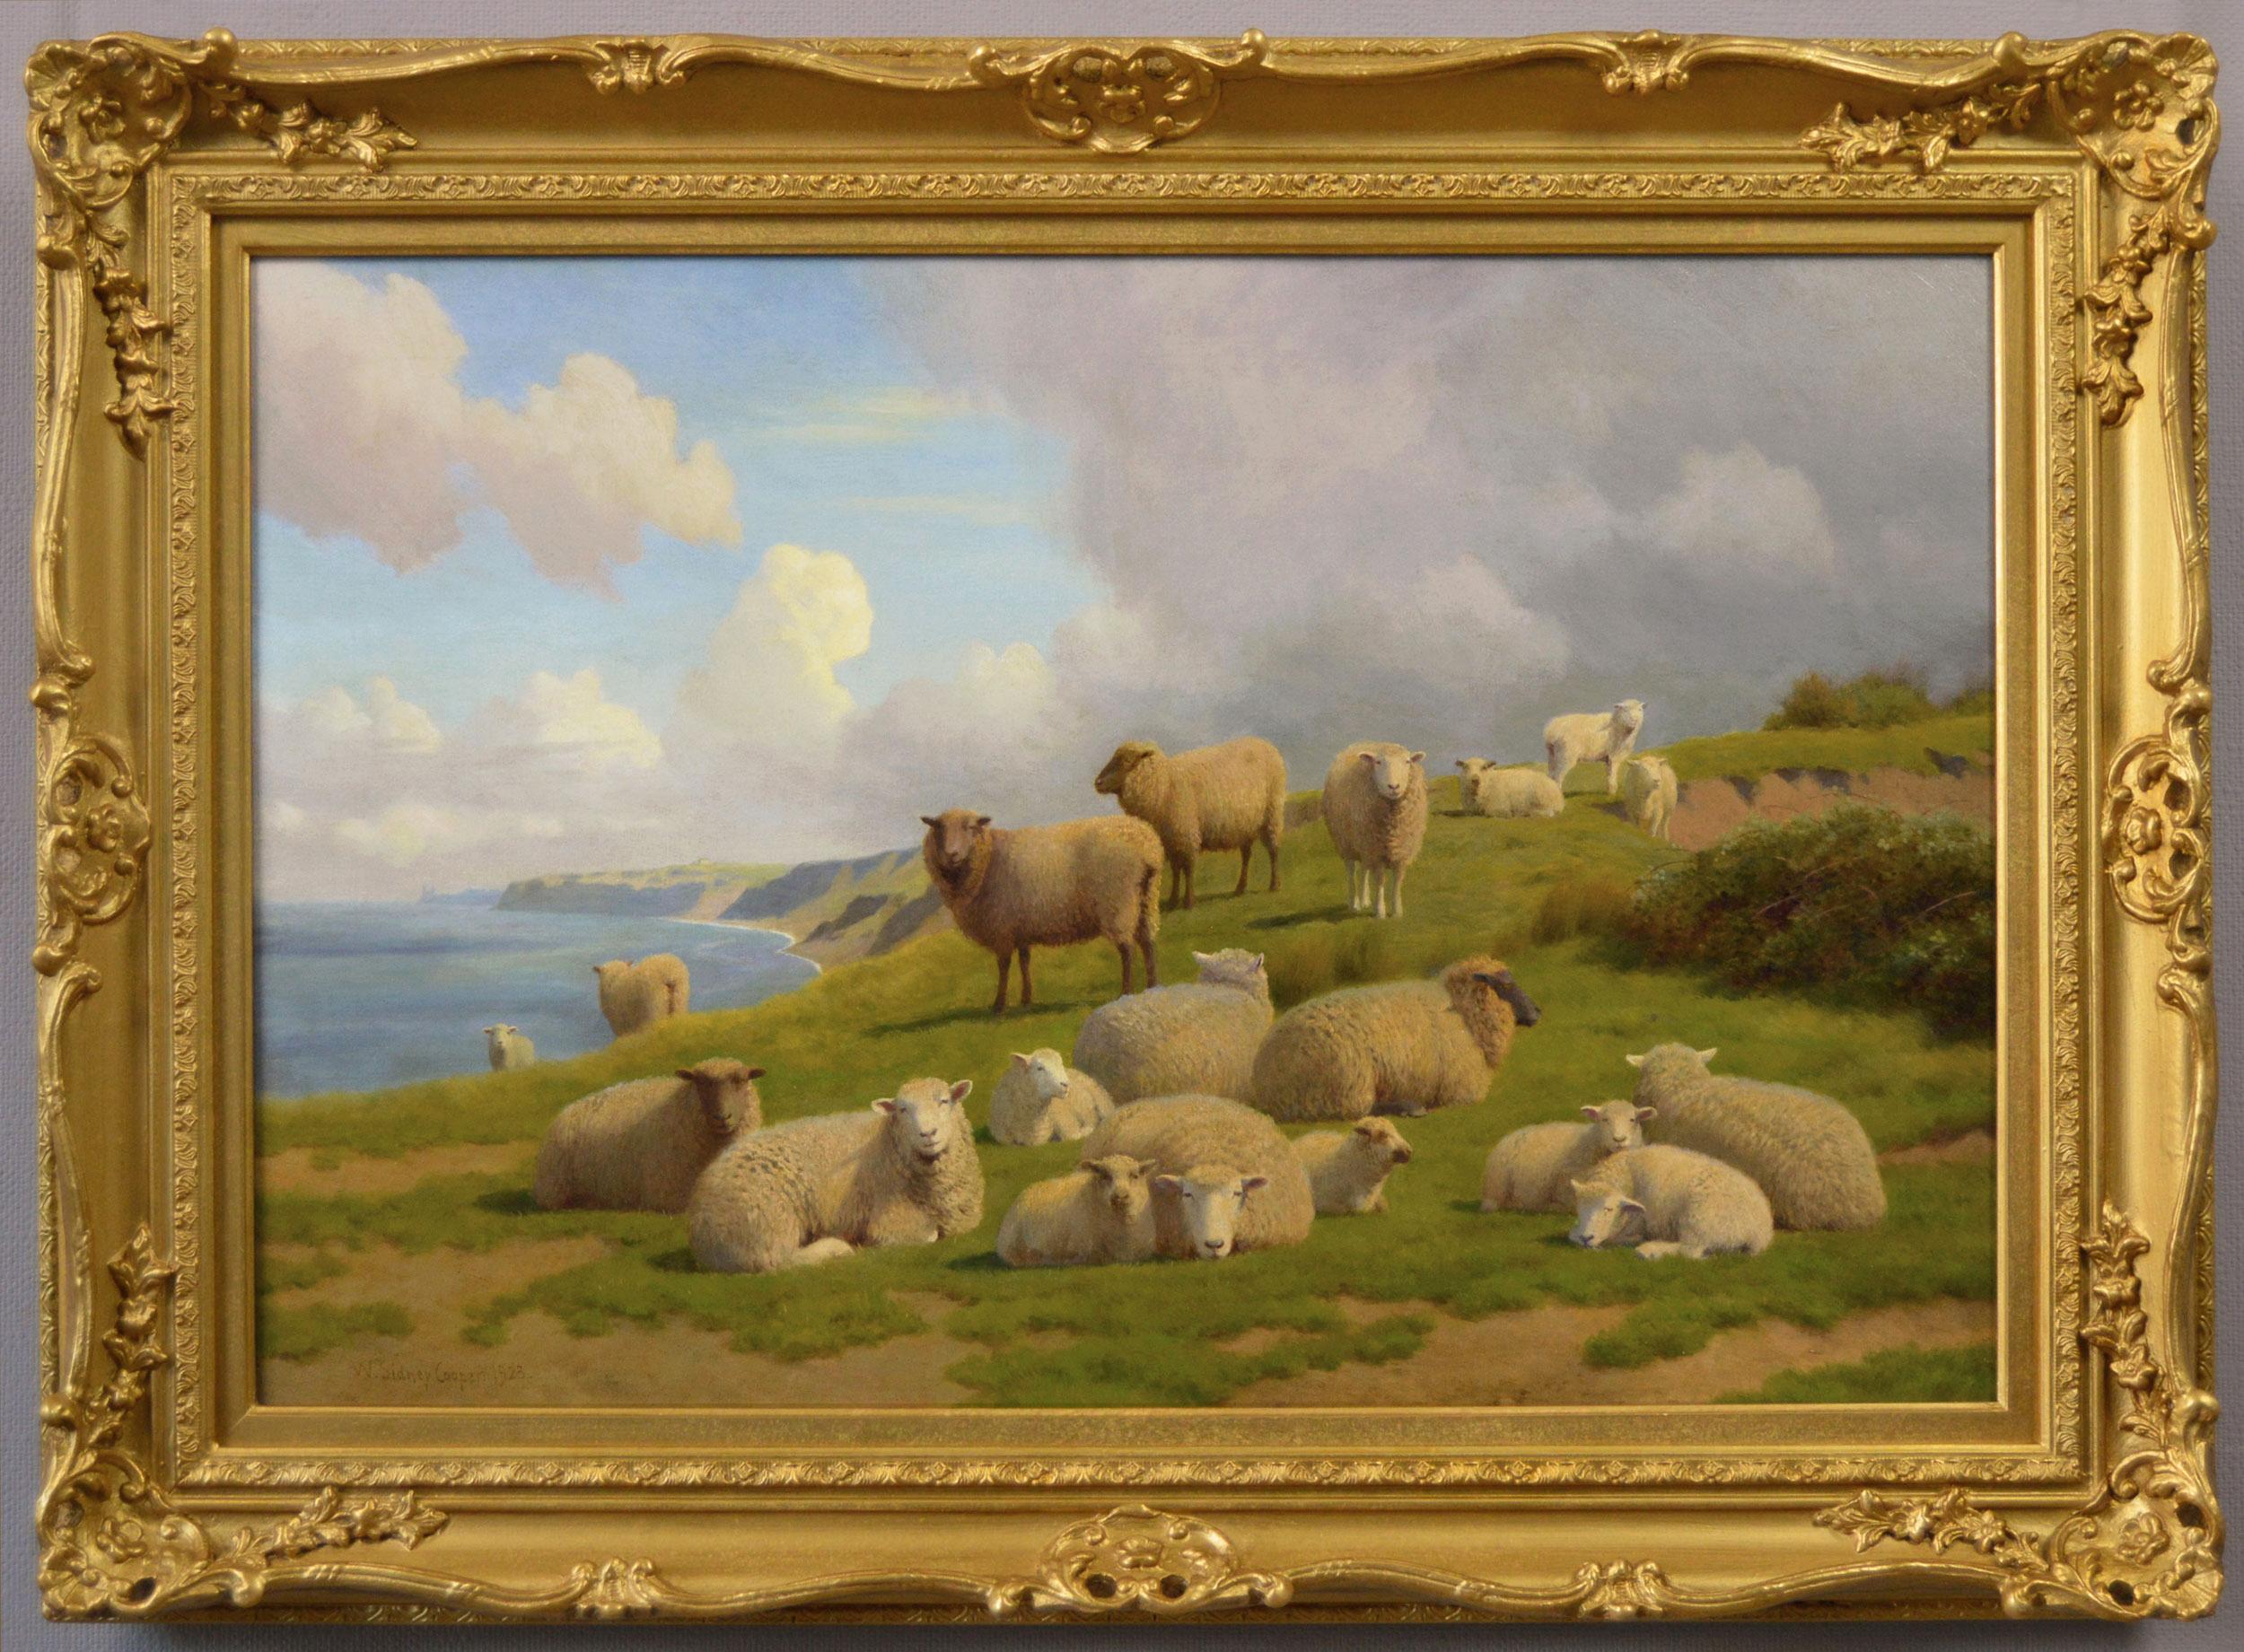 Animal Painting William Sidney Cooper - Peinture à l'huile du 19e siècle représentant des moutons sur une falaise près de la baie de Herne, Kent